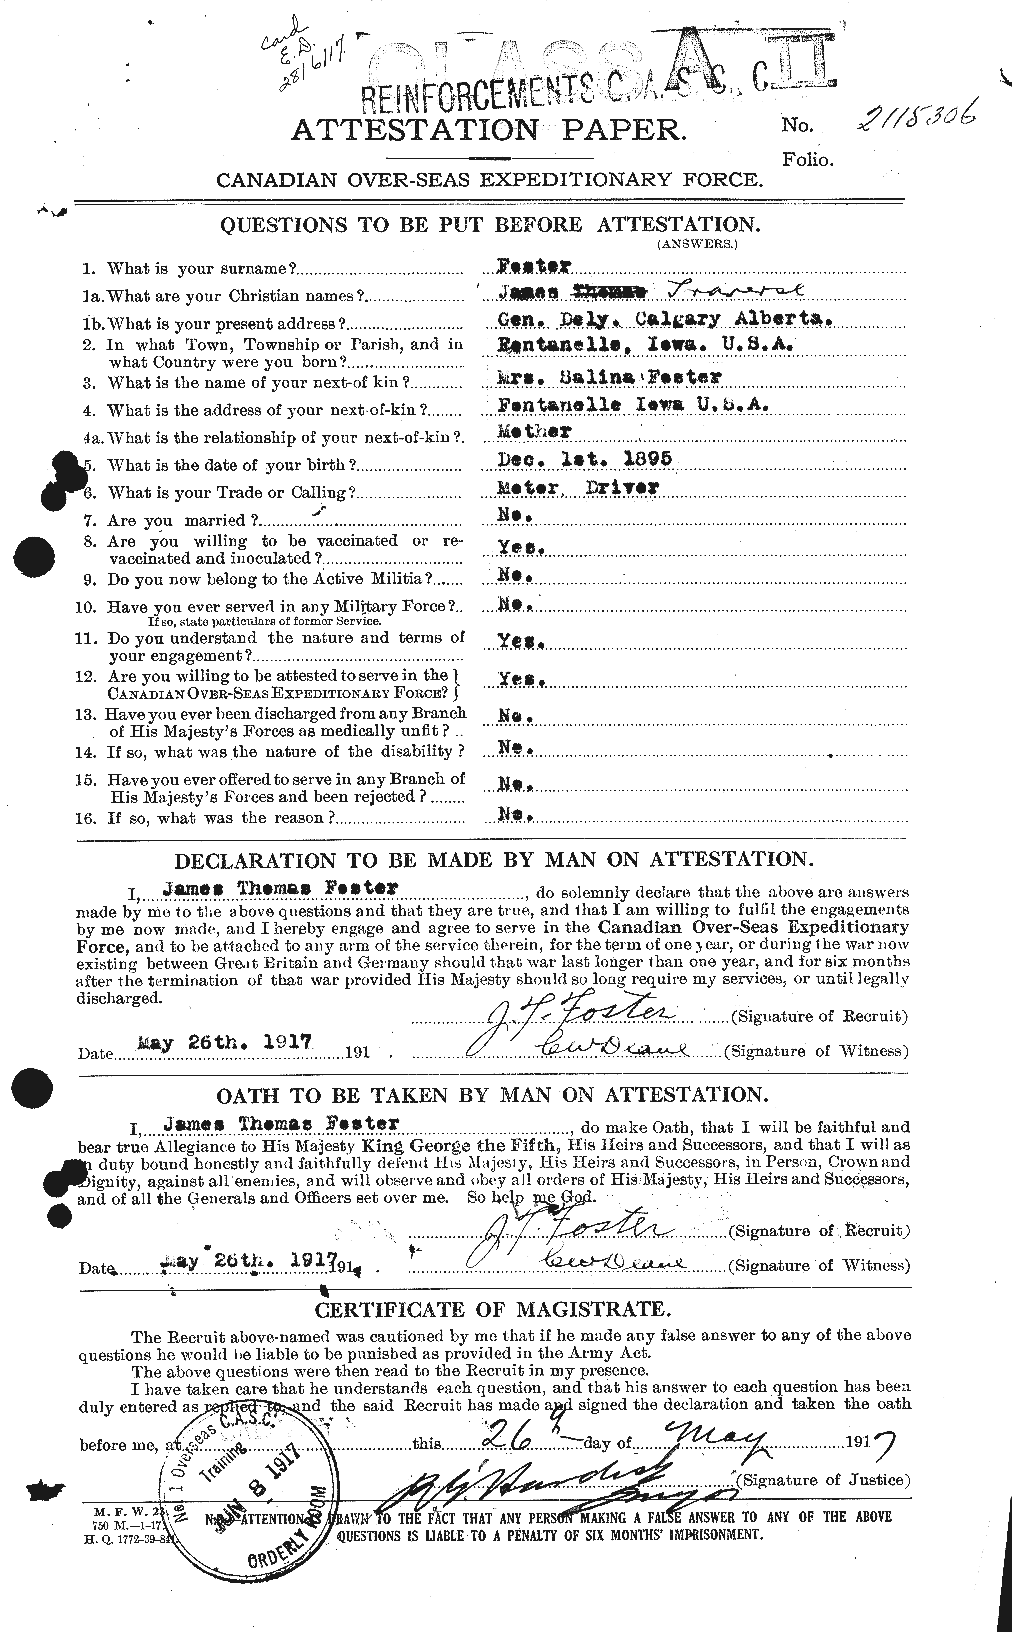 Dossiers du Personnel de la Première Guerre mondiale - CEC 333319a